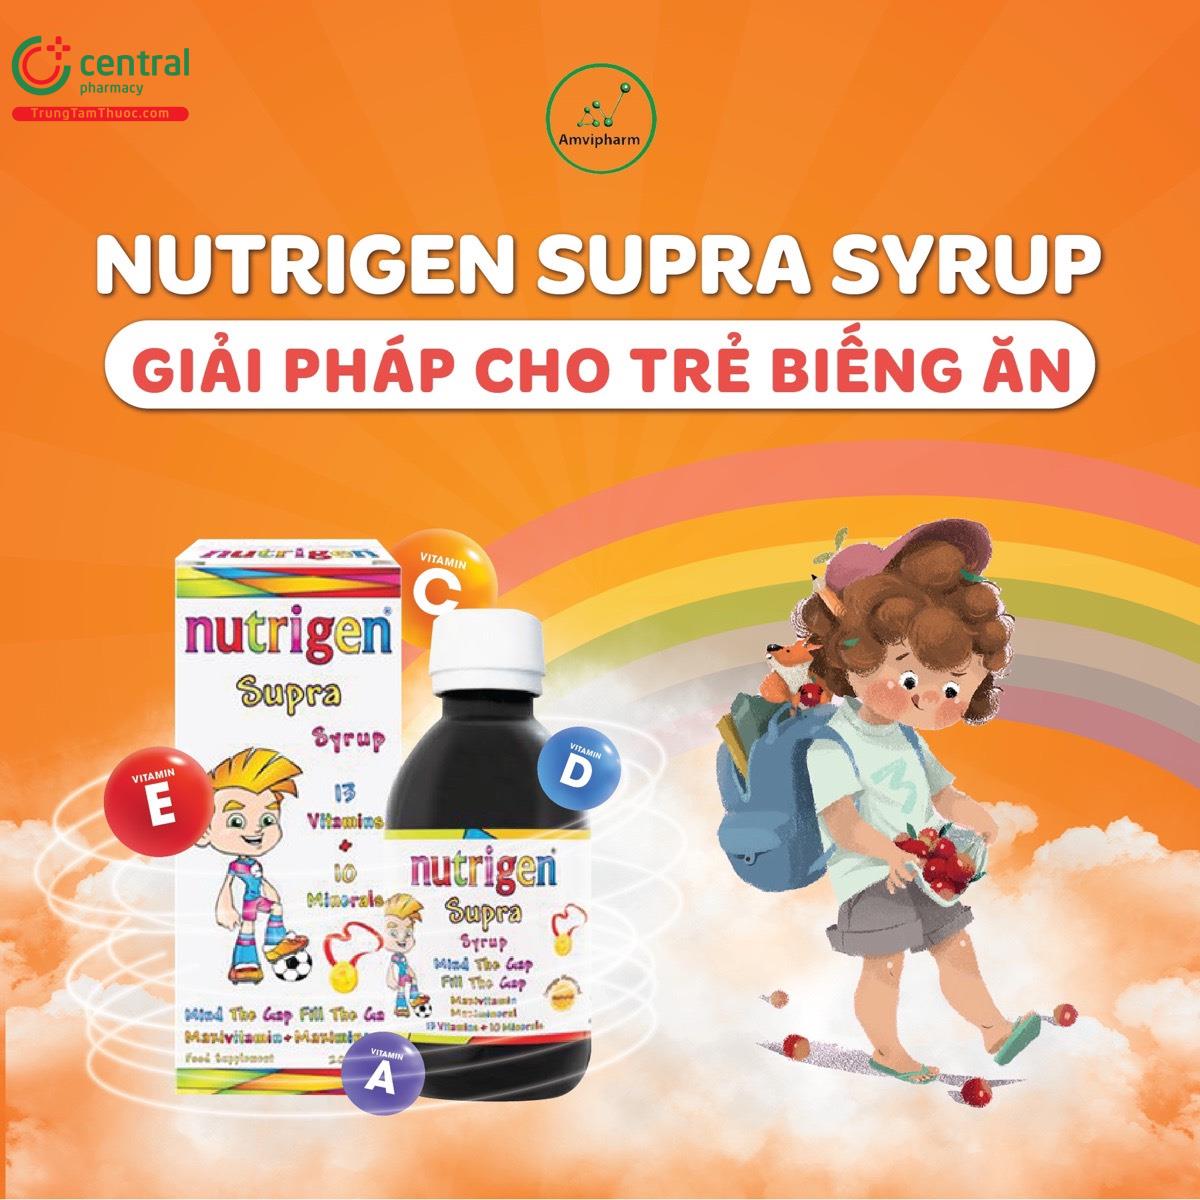 Nutrigen Supra Syrup  - Bổ sung vitamin và dưỡng chất cho trẻ